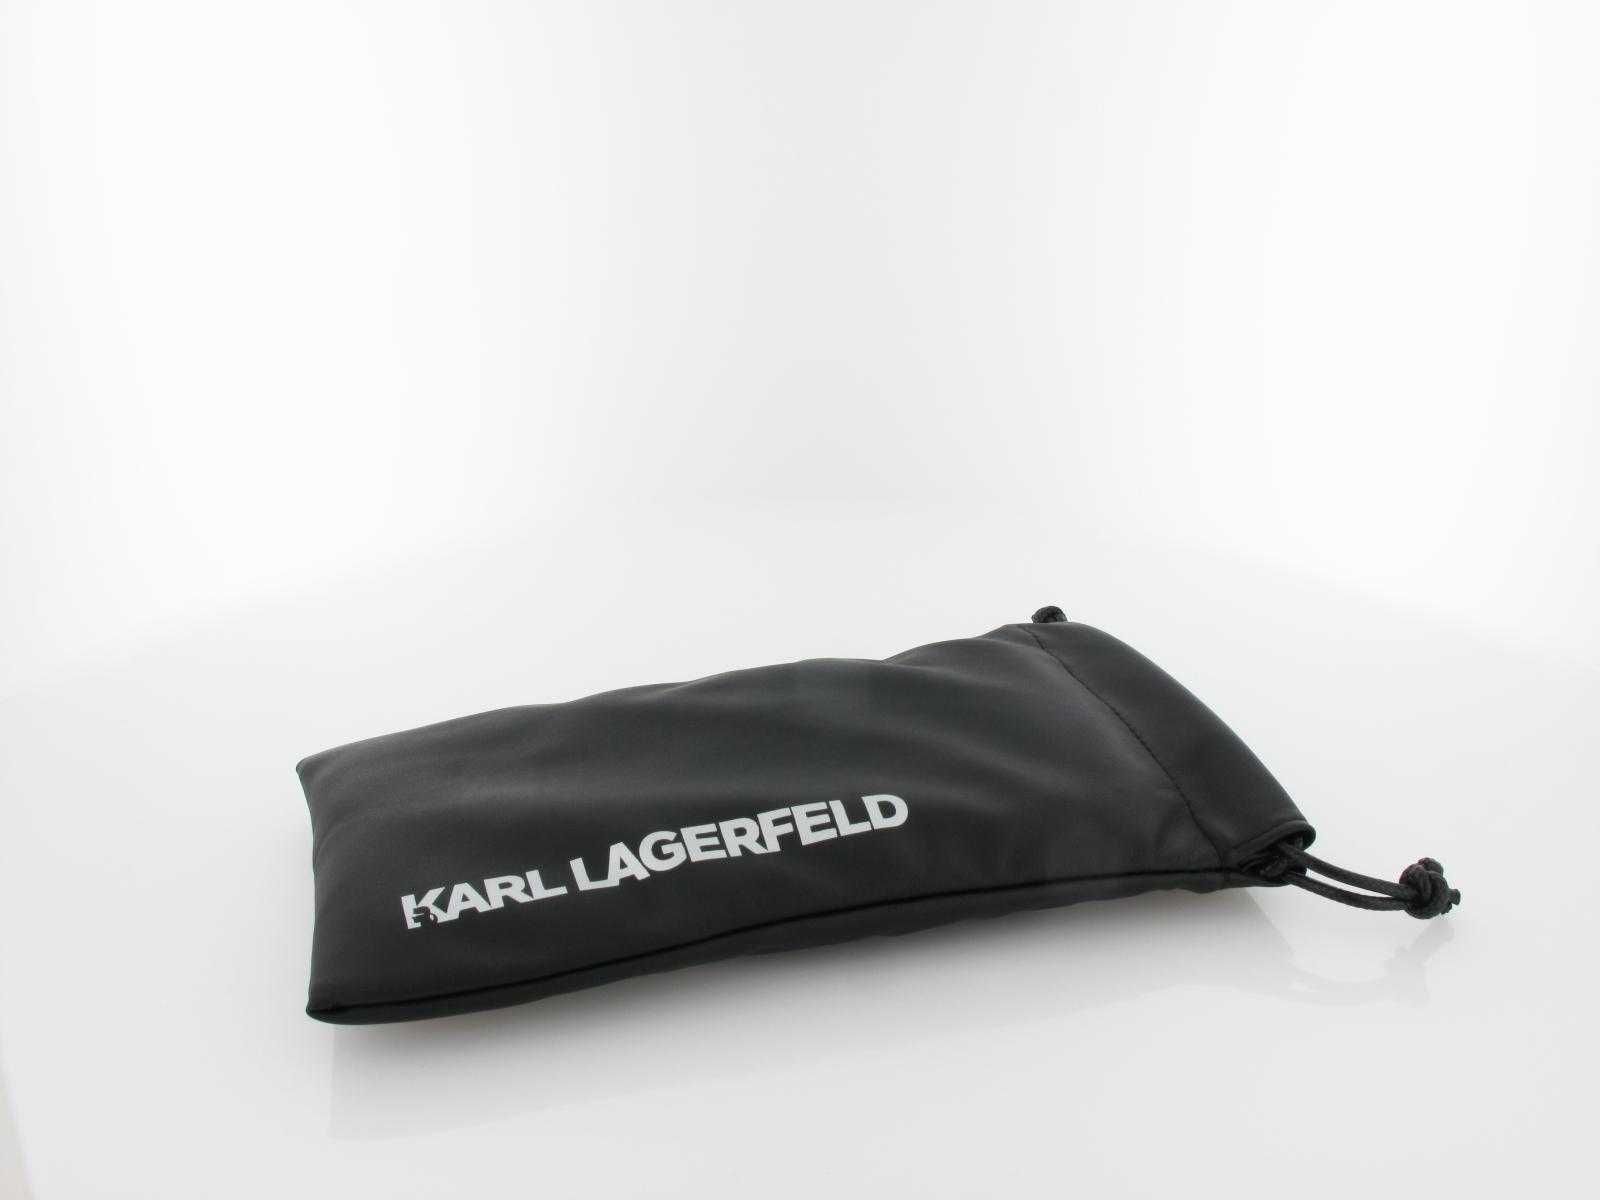 Оригинални овални  дамски слънчеви очила KARL LAGERFELD -55%